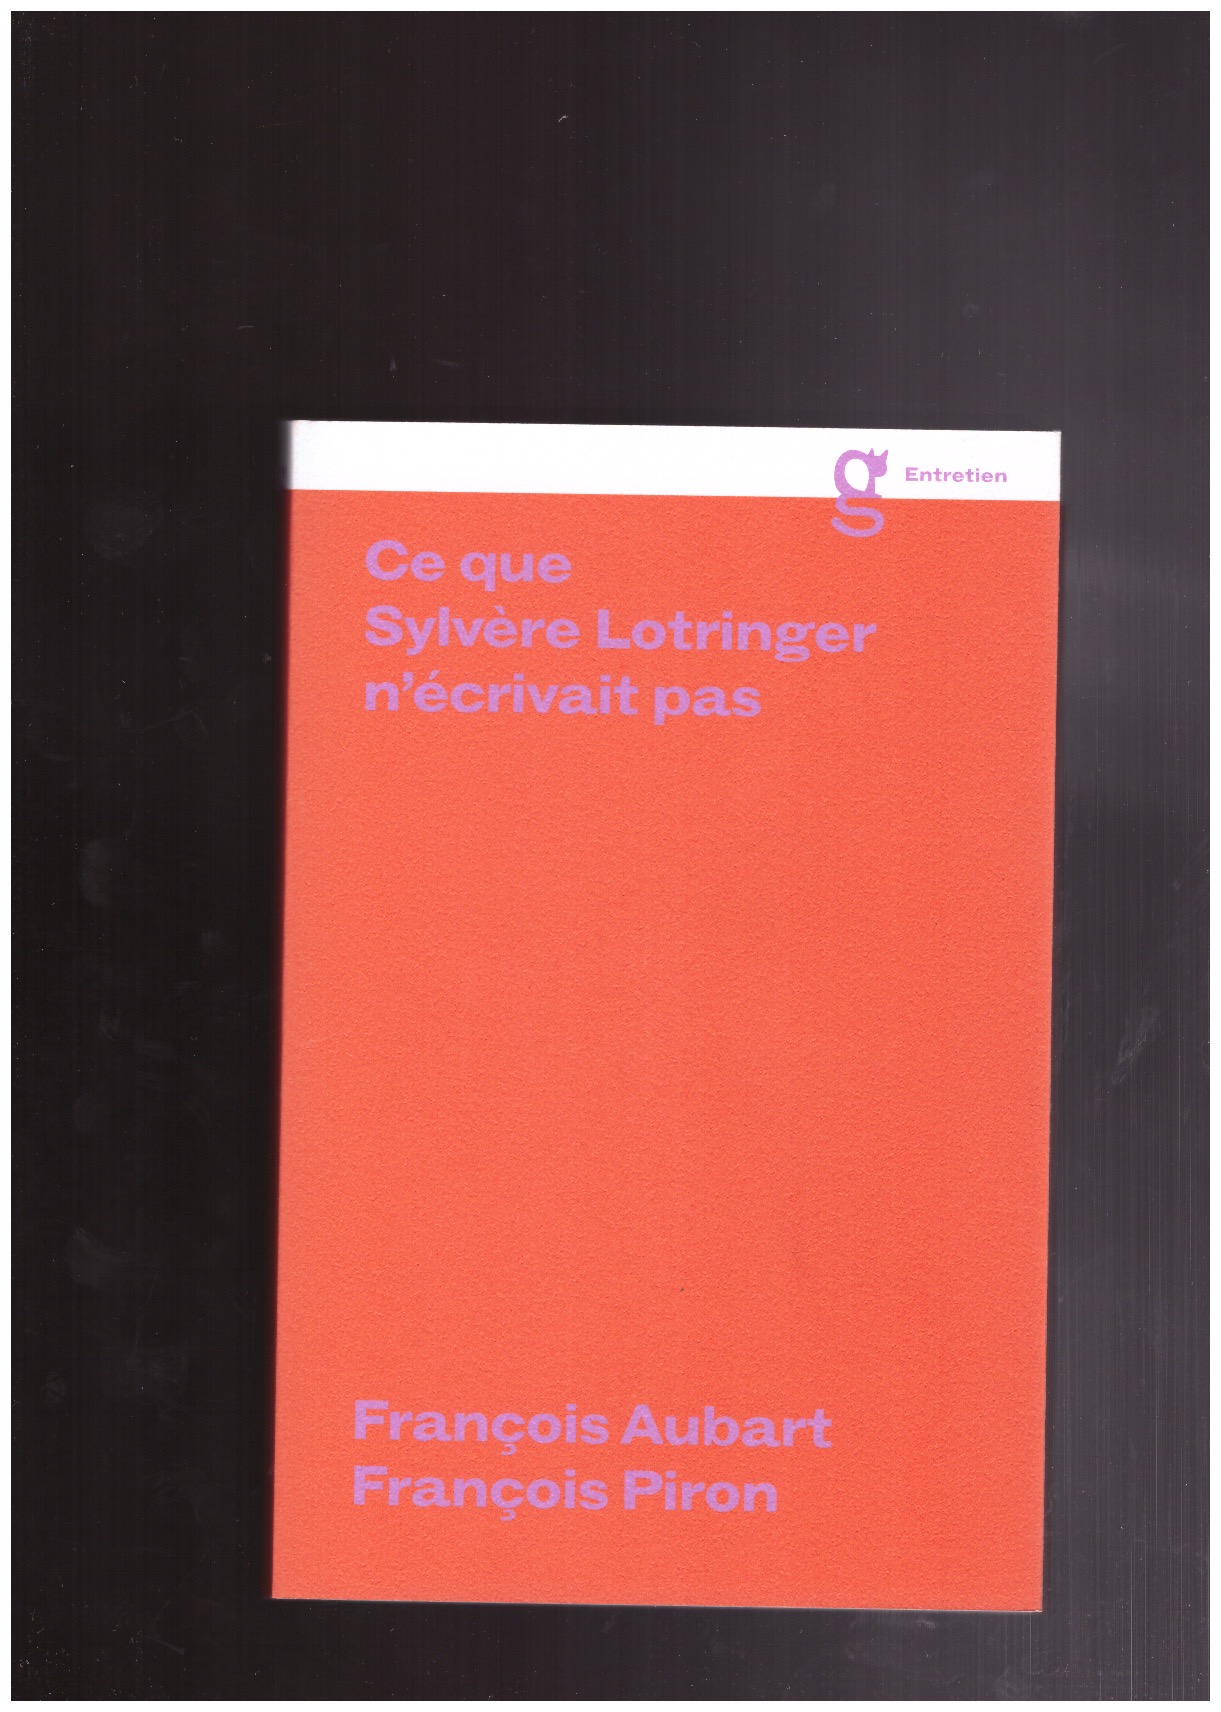 LOTRINGER, Sylvère; AUBART, François; PIRON, François - Ce que Sylvère Lotringer n'écrivait pas